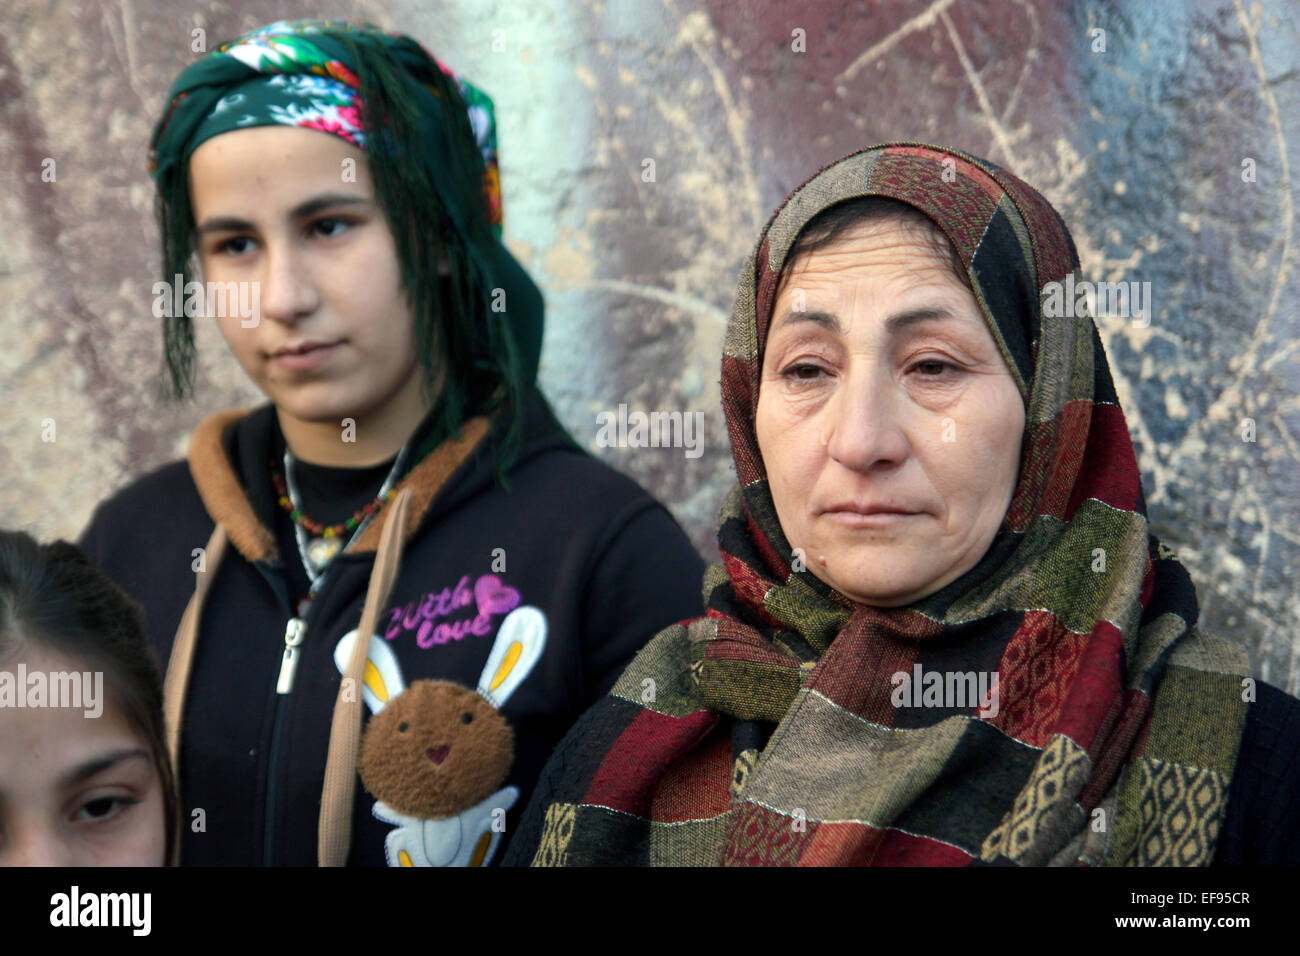 Adla Hasso (r), ein Bewohner von Kobane, steht neben einem jungen unbekannten Mädchen in Stadt Kobane, Syrien, 28. Januar 2015.  Hasso blieb in der Stadt in den letzten vier Monaten bei schweren Kämpfen zwischen kurdischen Kräfte und Kämpfer der sogenannten islamischen Staat (IS) stattfand. Kurdische Kämpfer haben es geschafft, aus der Stadt Kobane IS Kräfte zurückzudrängen.  Raketen und Kampfhandlungen, jedoch haben viele Zivilisten getötet und links die Stadt Kobane völlig verwüstet. Foto: Jan Kuhlmann/dpa Stockfoto